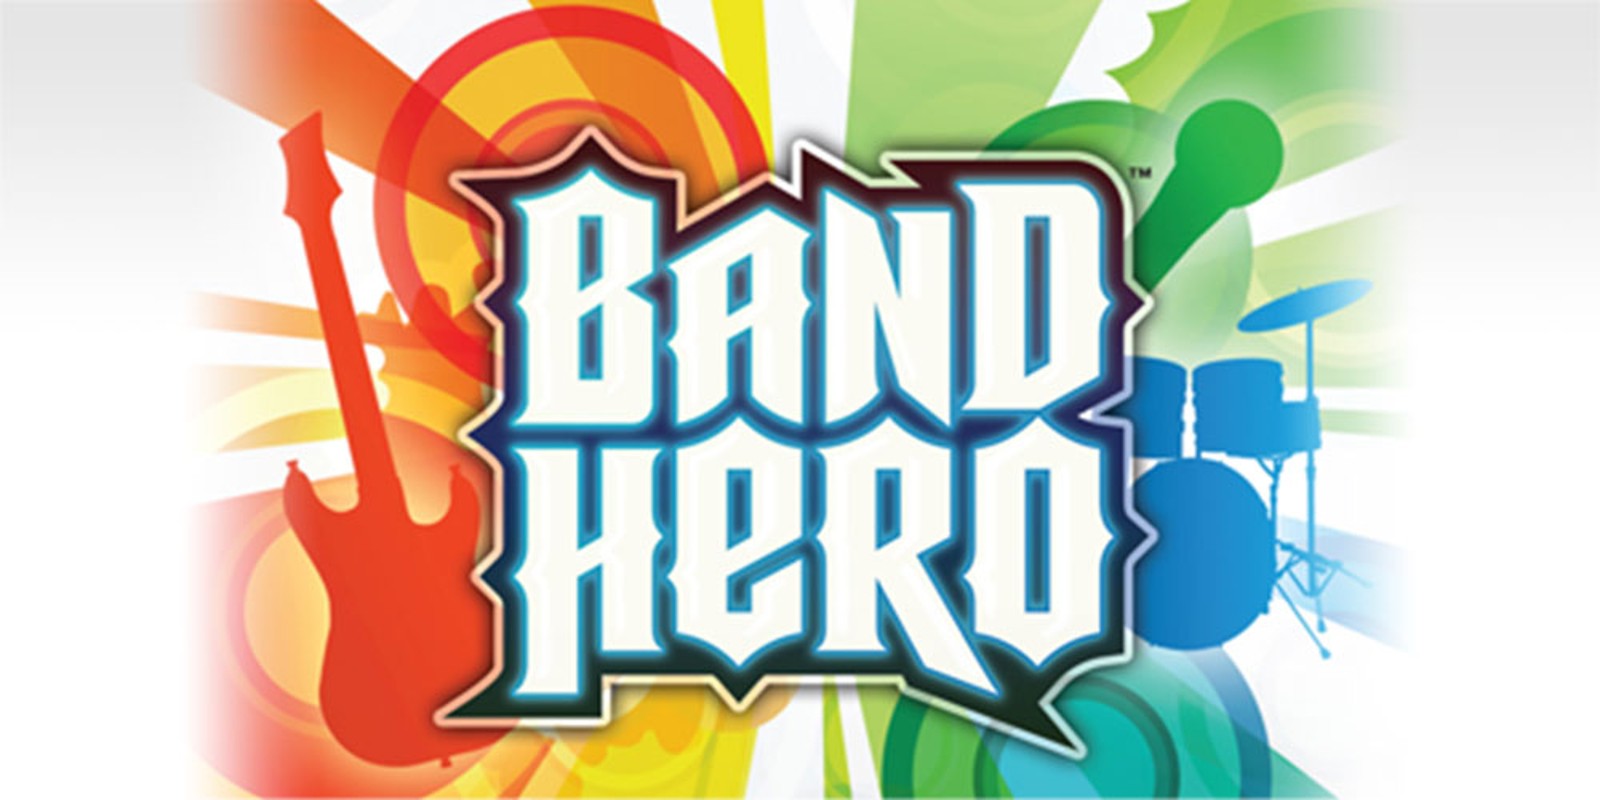 Guitar Hero Rock Band Wii: Compatibilité des instruments et jeux